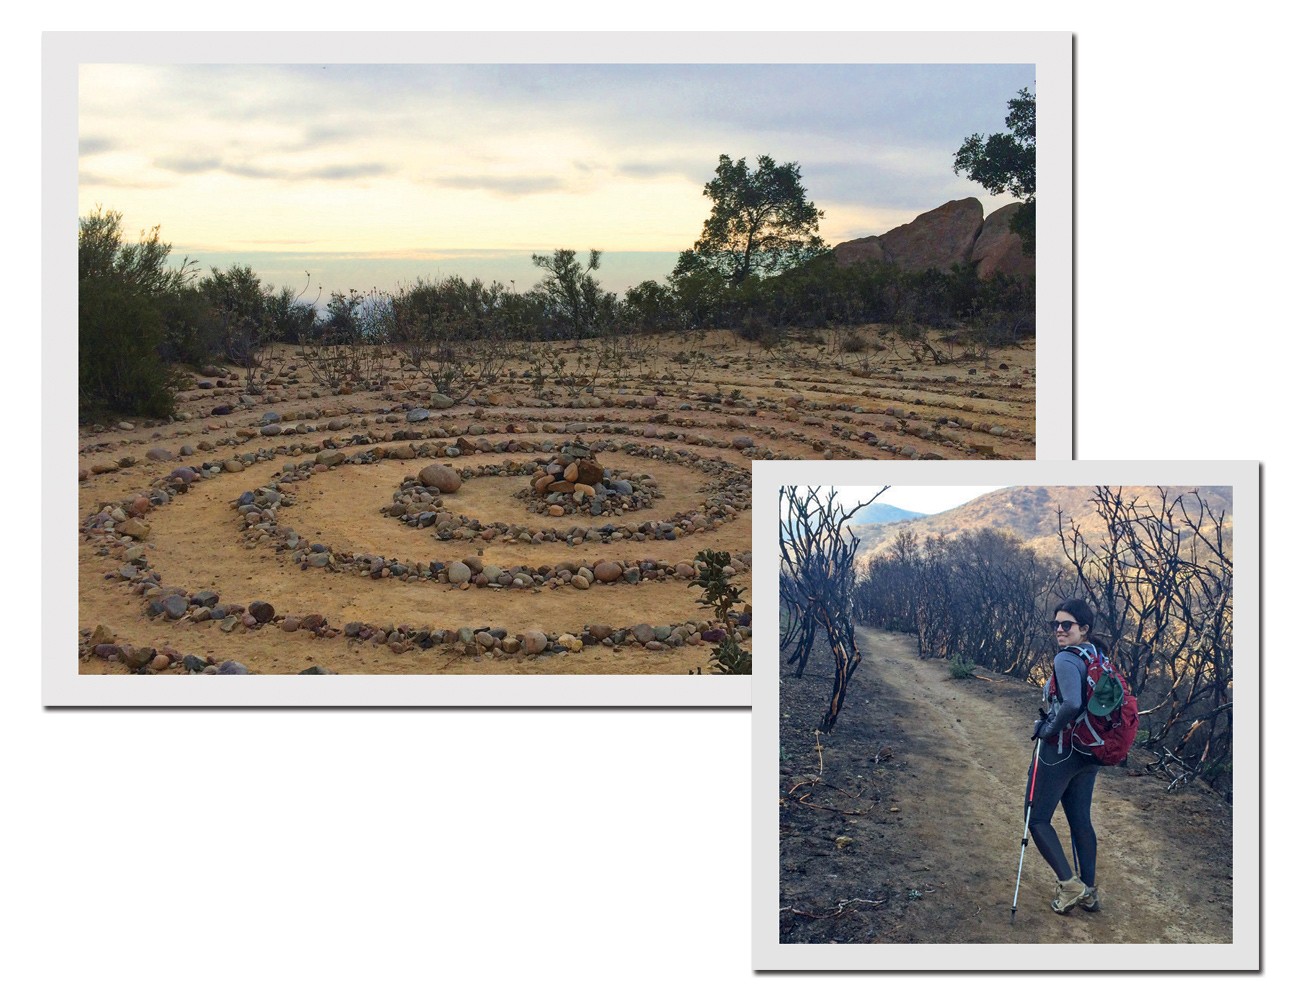 Espiral de pedras usada para meditação em uma das trilhas do programa do The Ashram; e Fernanda em manhã de hiking (Foto: Divulgação)